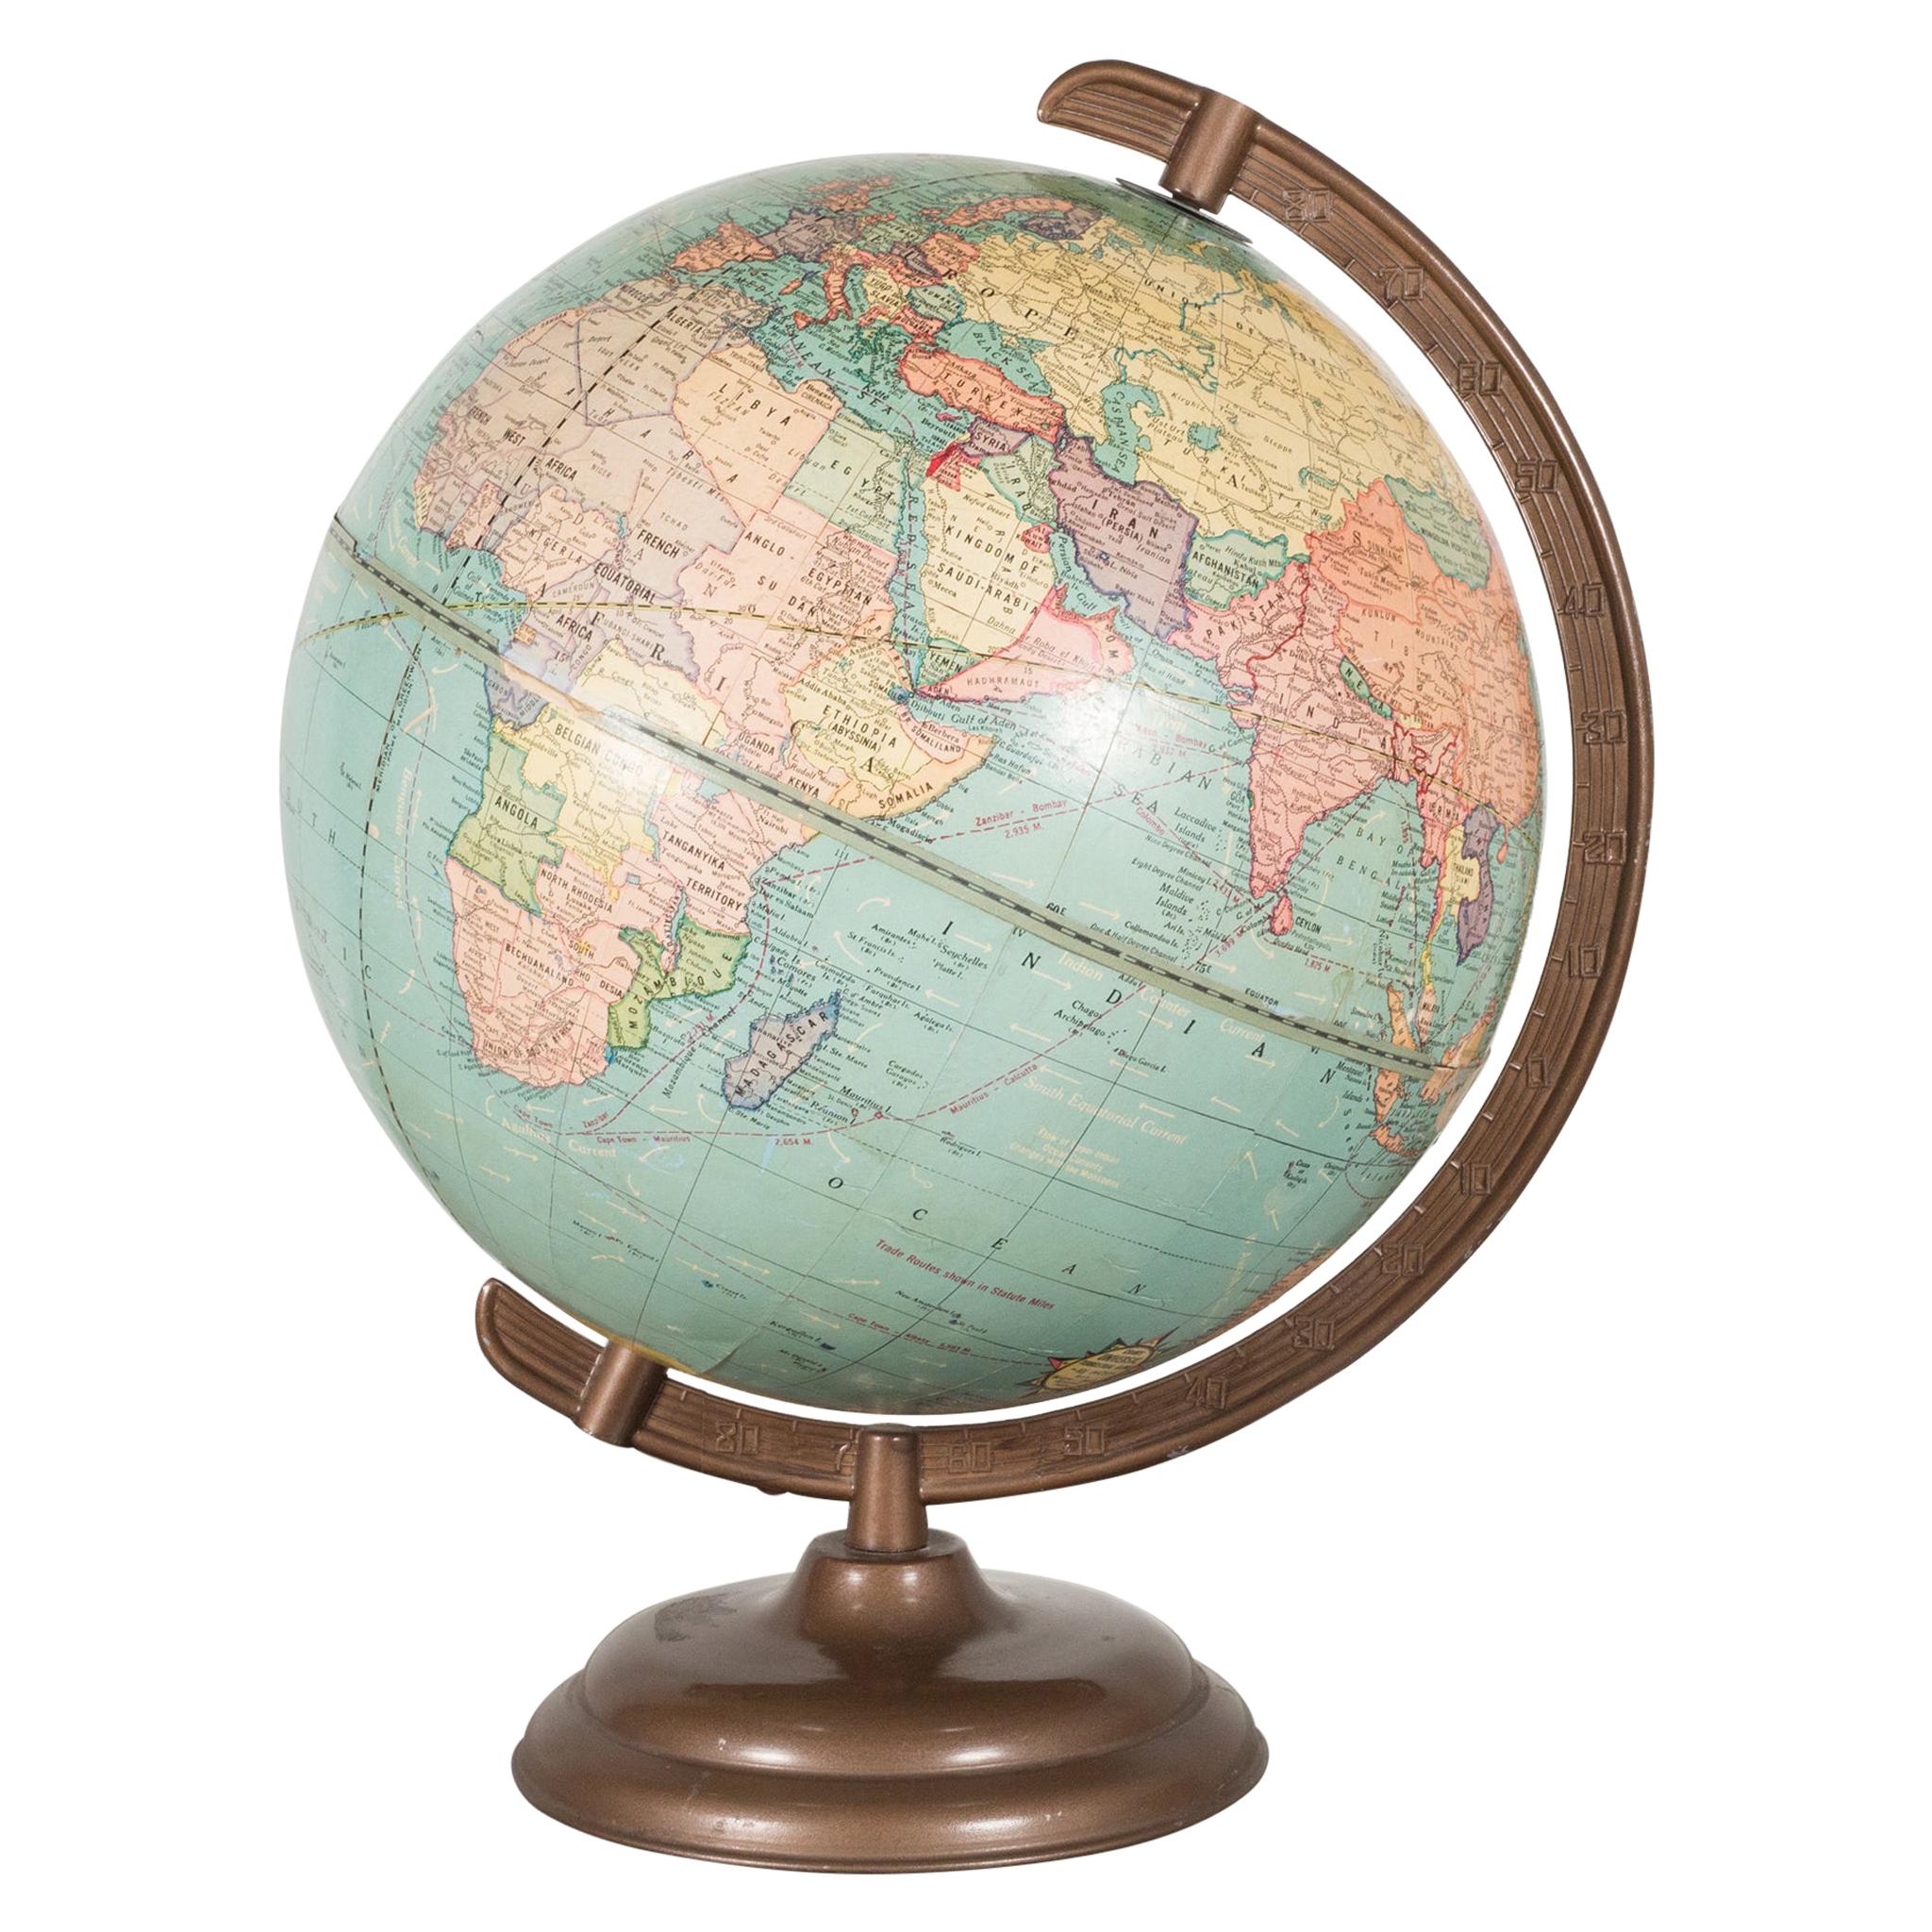 Cram's Universal Globe, c.1940-1950